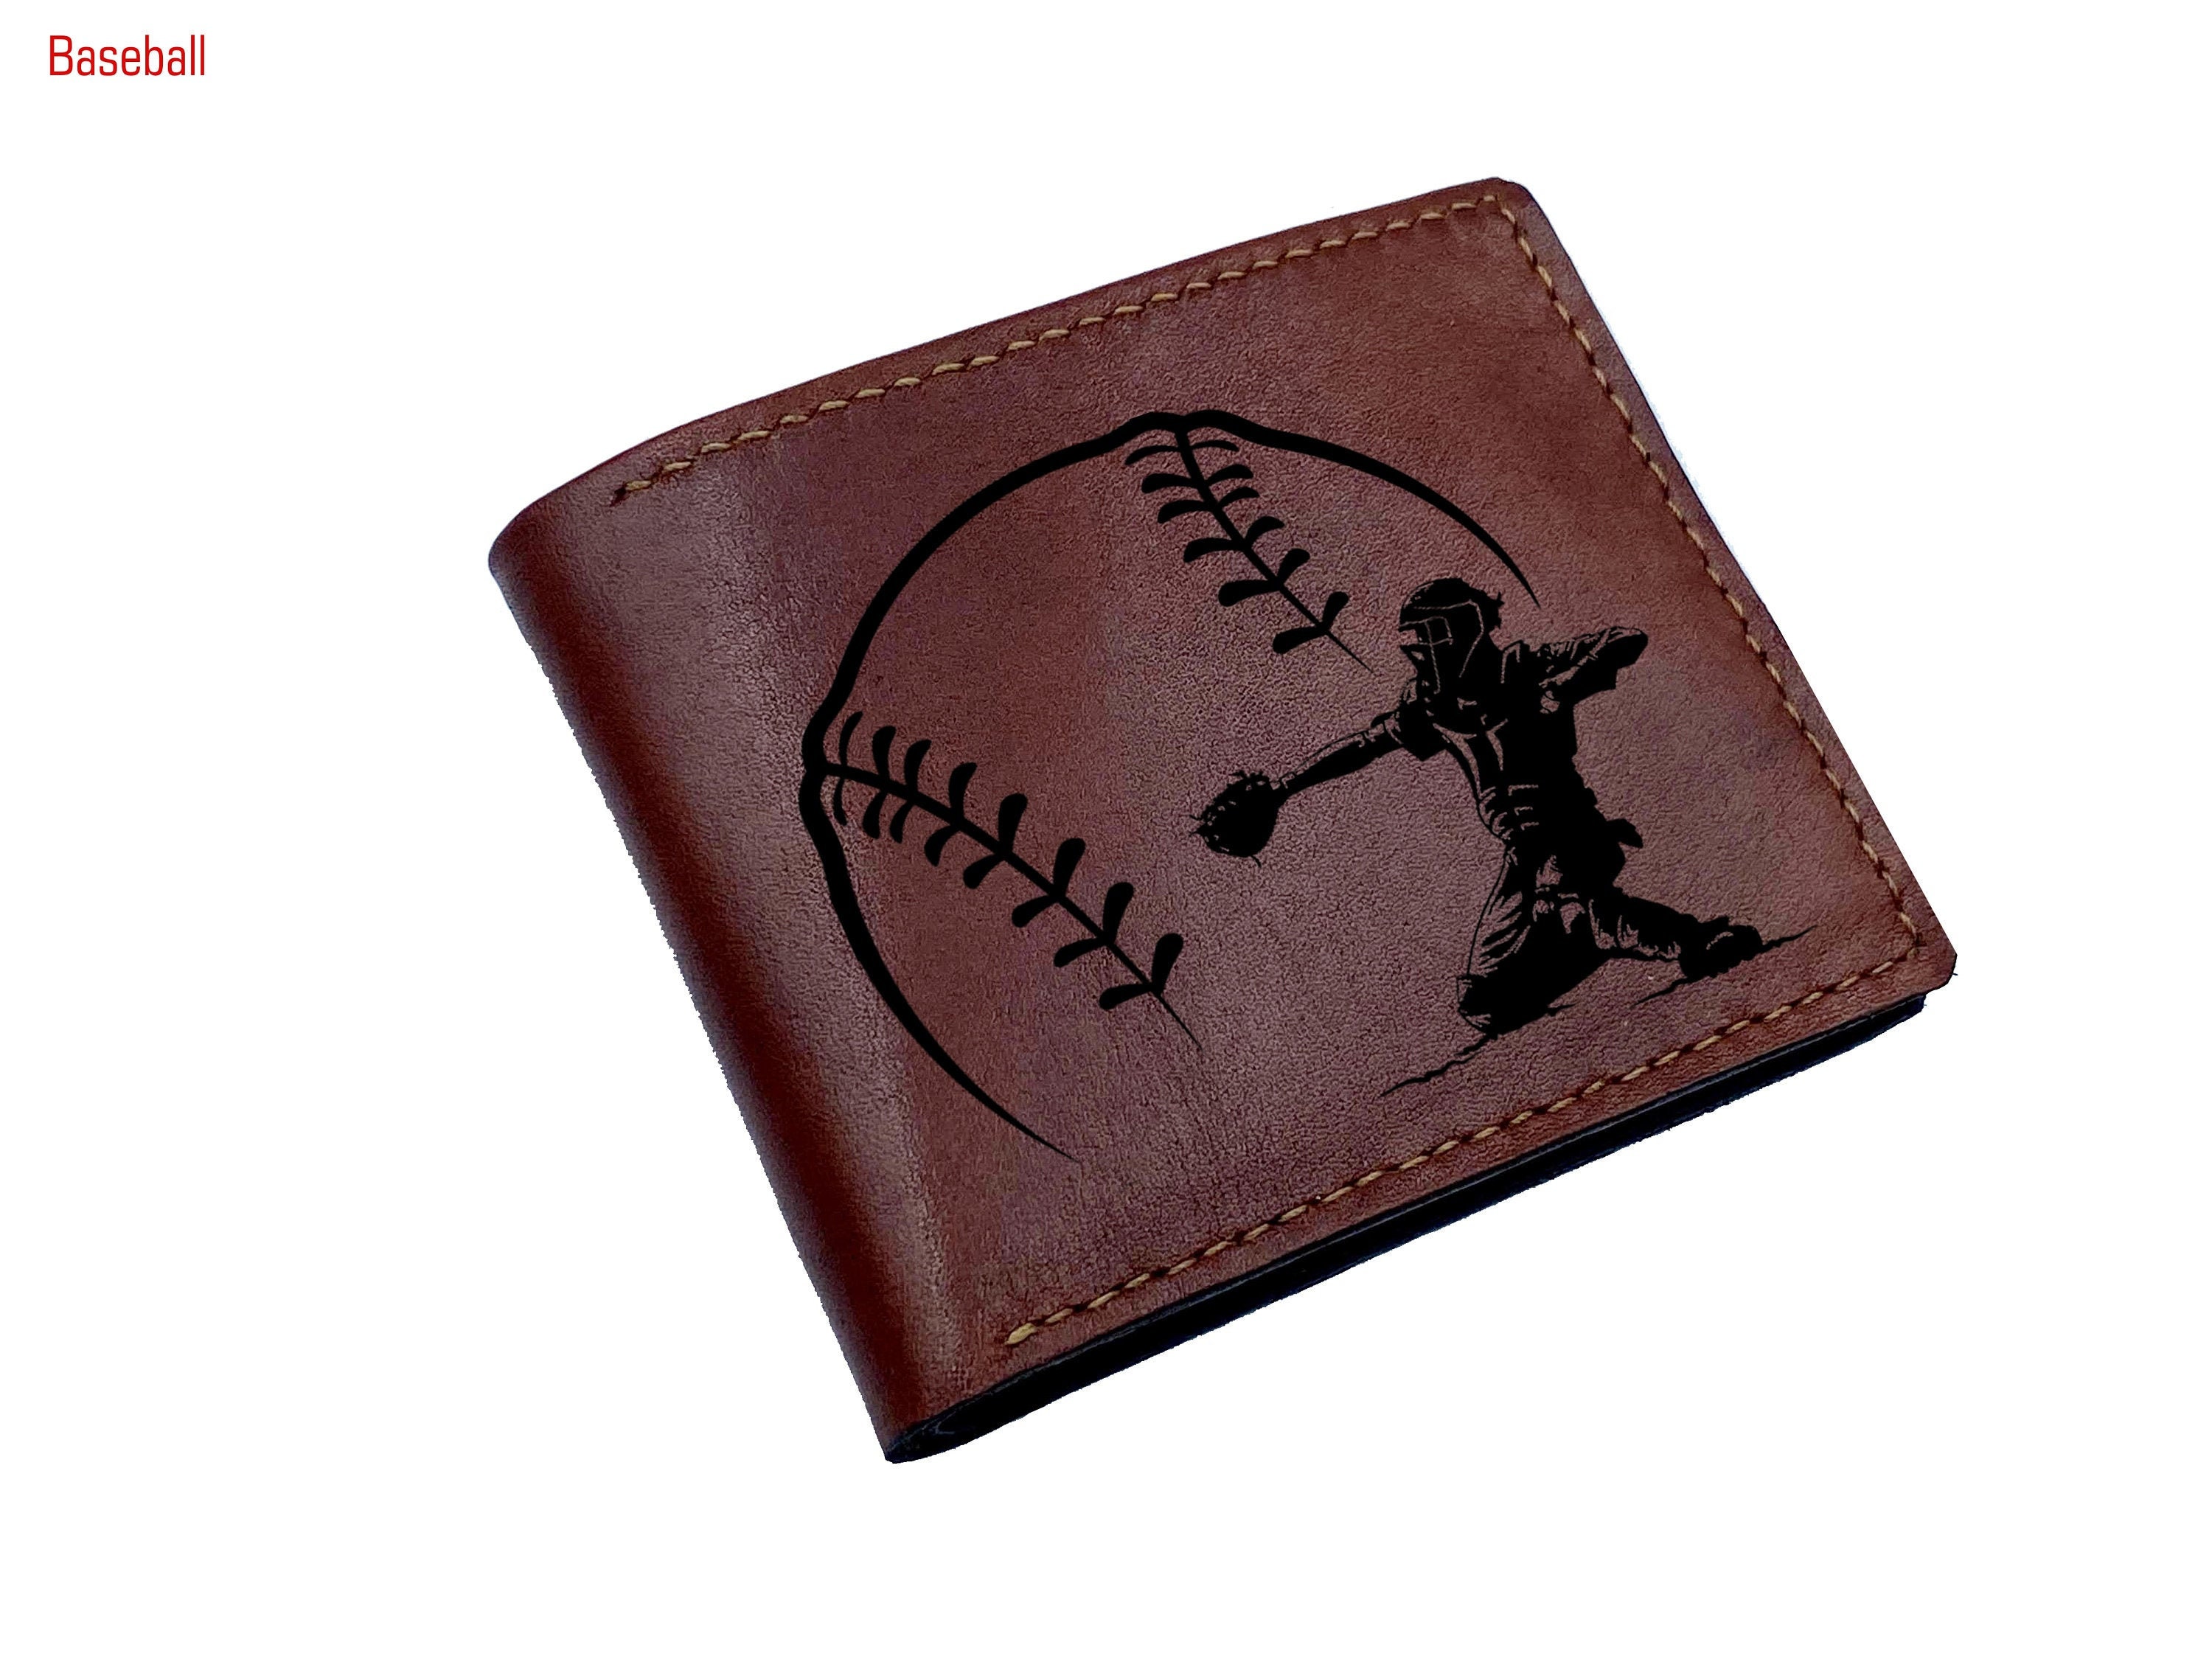 Billetera personalizada hombres de juegos deportivos - Etsy